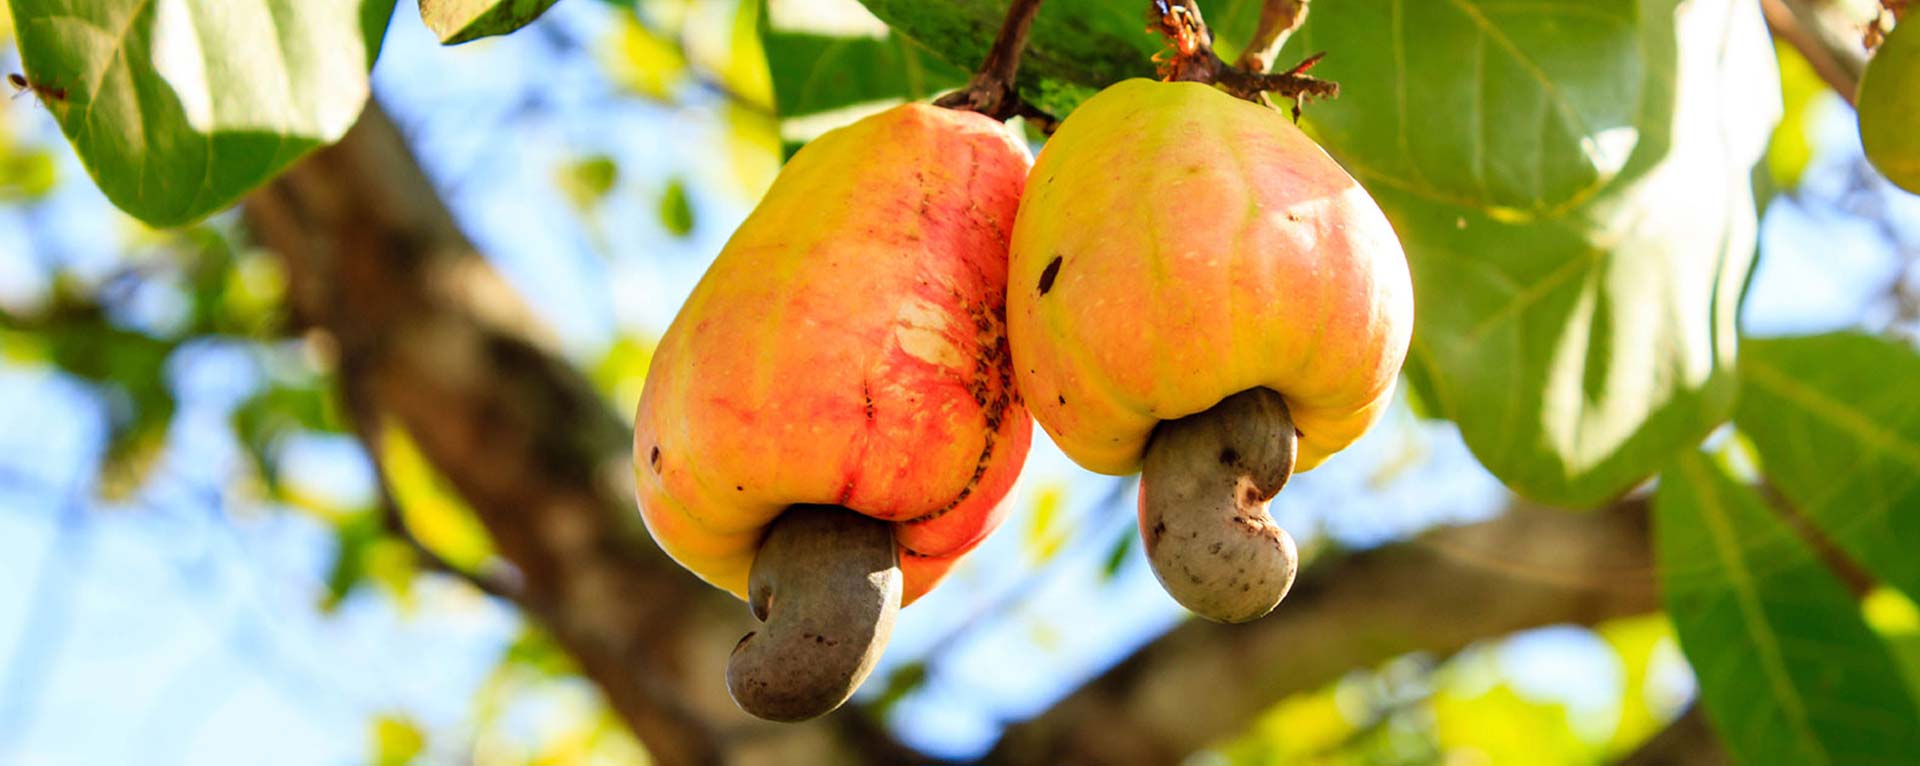 Der Cashewbaum ist ein sehr vielseitiger Baum, daher können fast alle Teile des Apfels verwendet werden: Cashewfrucht Cashewnuss Cashewschale Cashewkern Cashewseidenschale ...